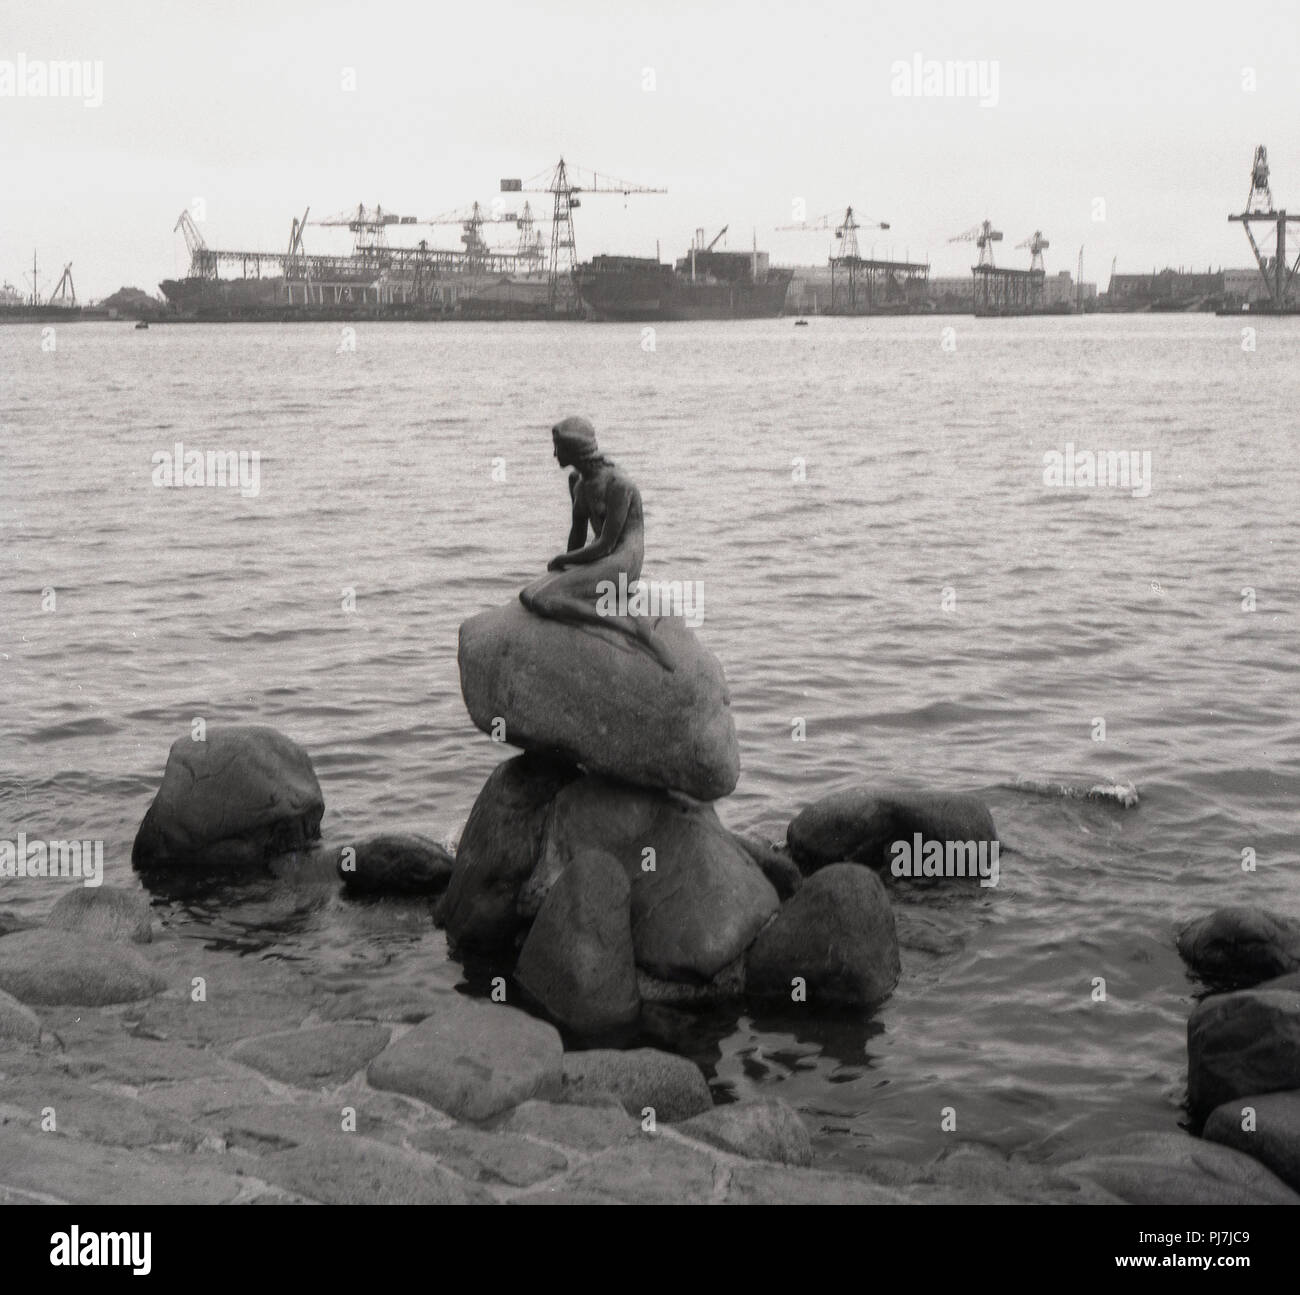 Années 1950, historiques, la statue de bronze, 'La Petite Sirène', sur un rocher au bord de l'eau à Langelinie, Copenhague, Danemark. Cette petite et unimposing statue d'Edvard Eriksen a été dévoilé dansdans 1913 et est devenu une icône de la ville, Banque D'Images